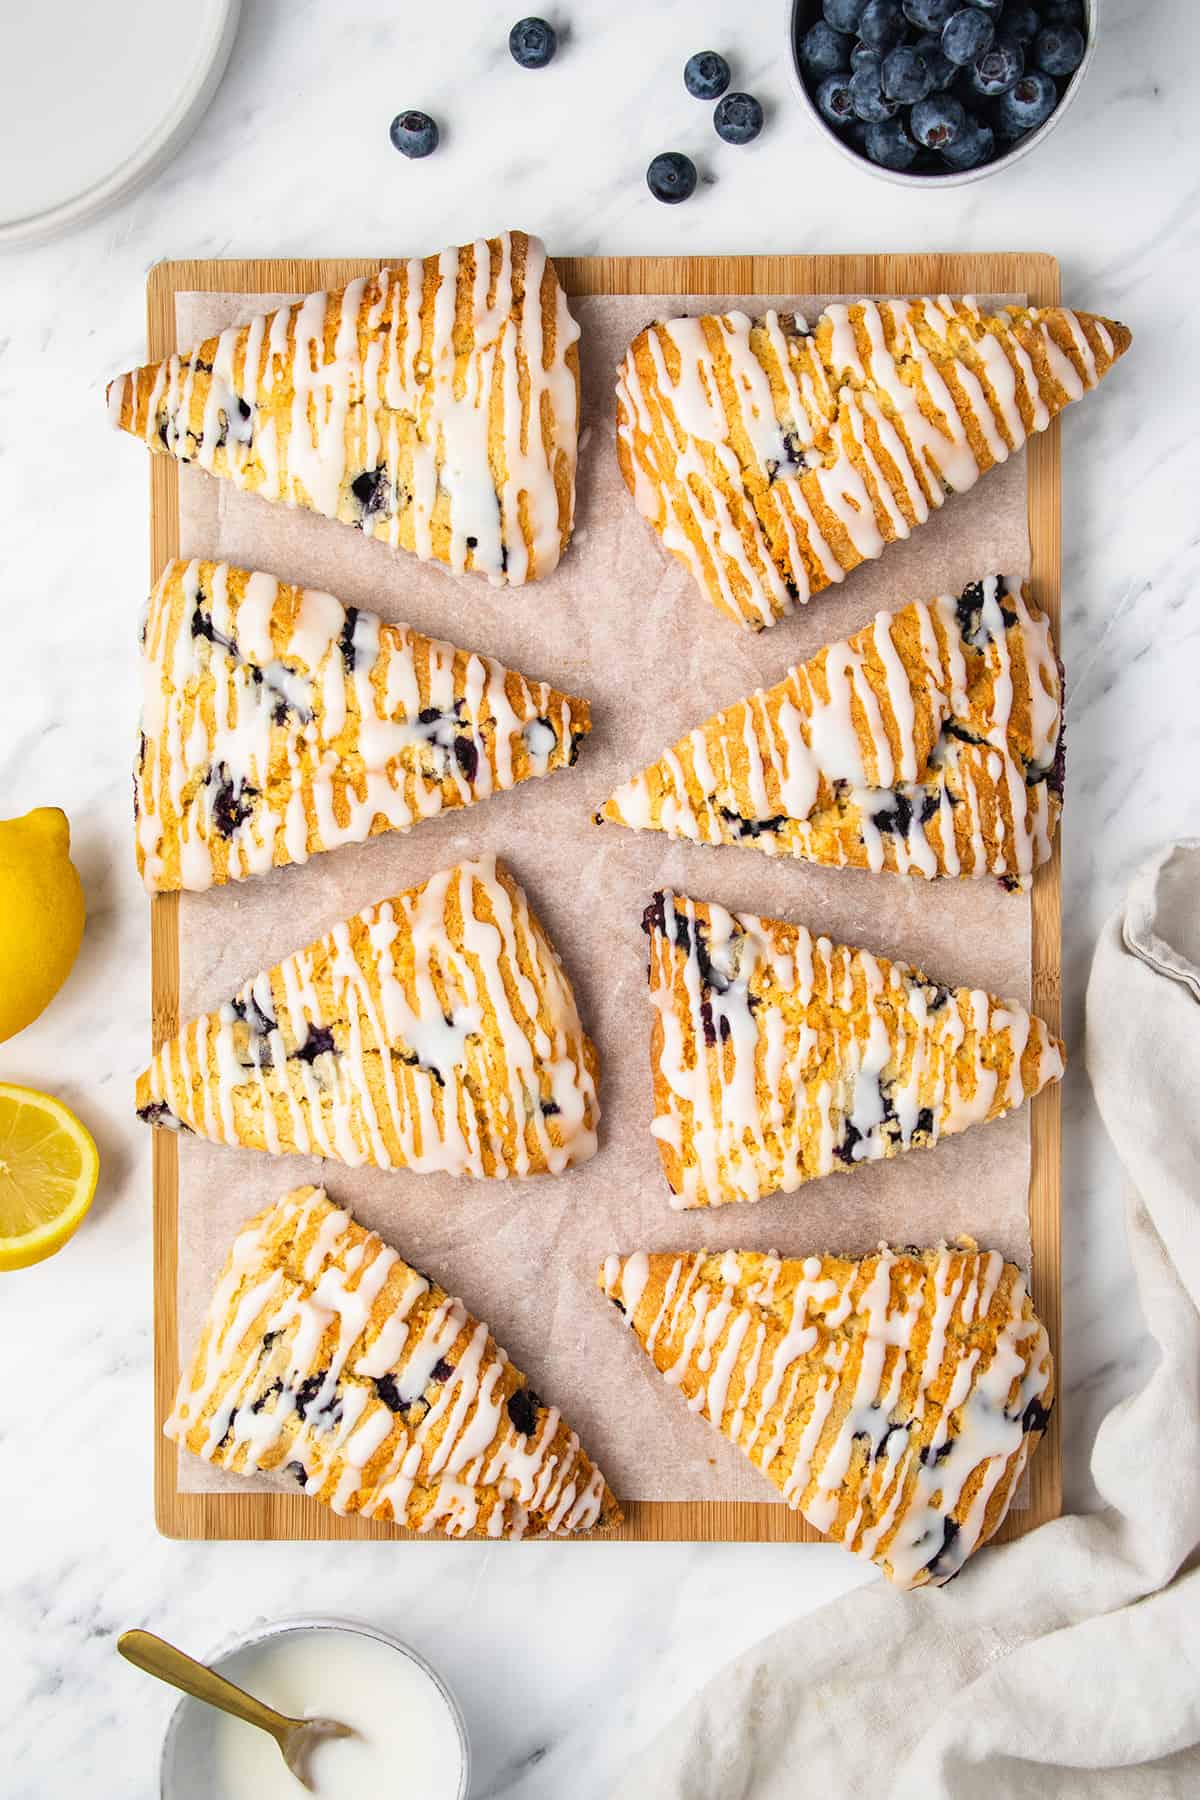 Lemon blueberry scones on a wooden board.